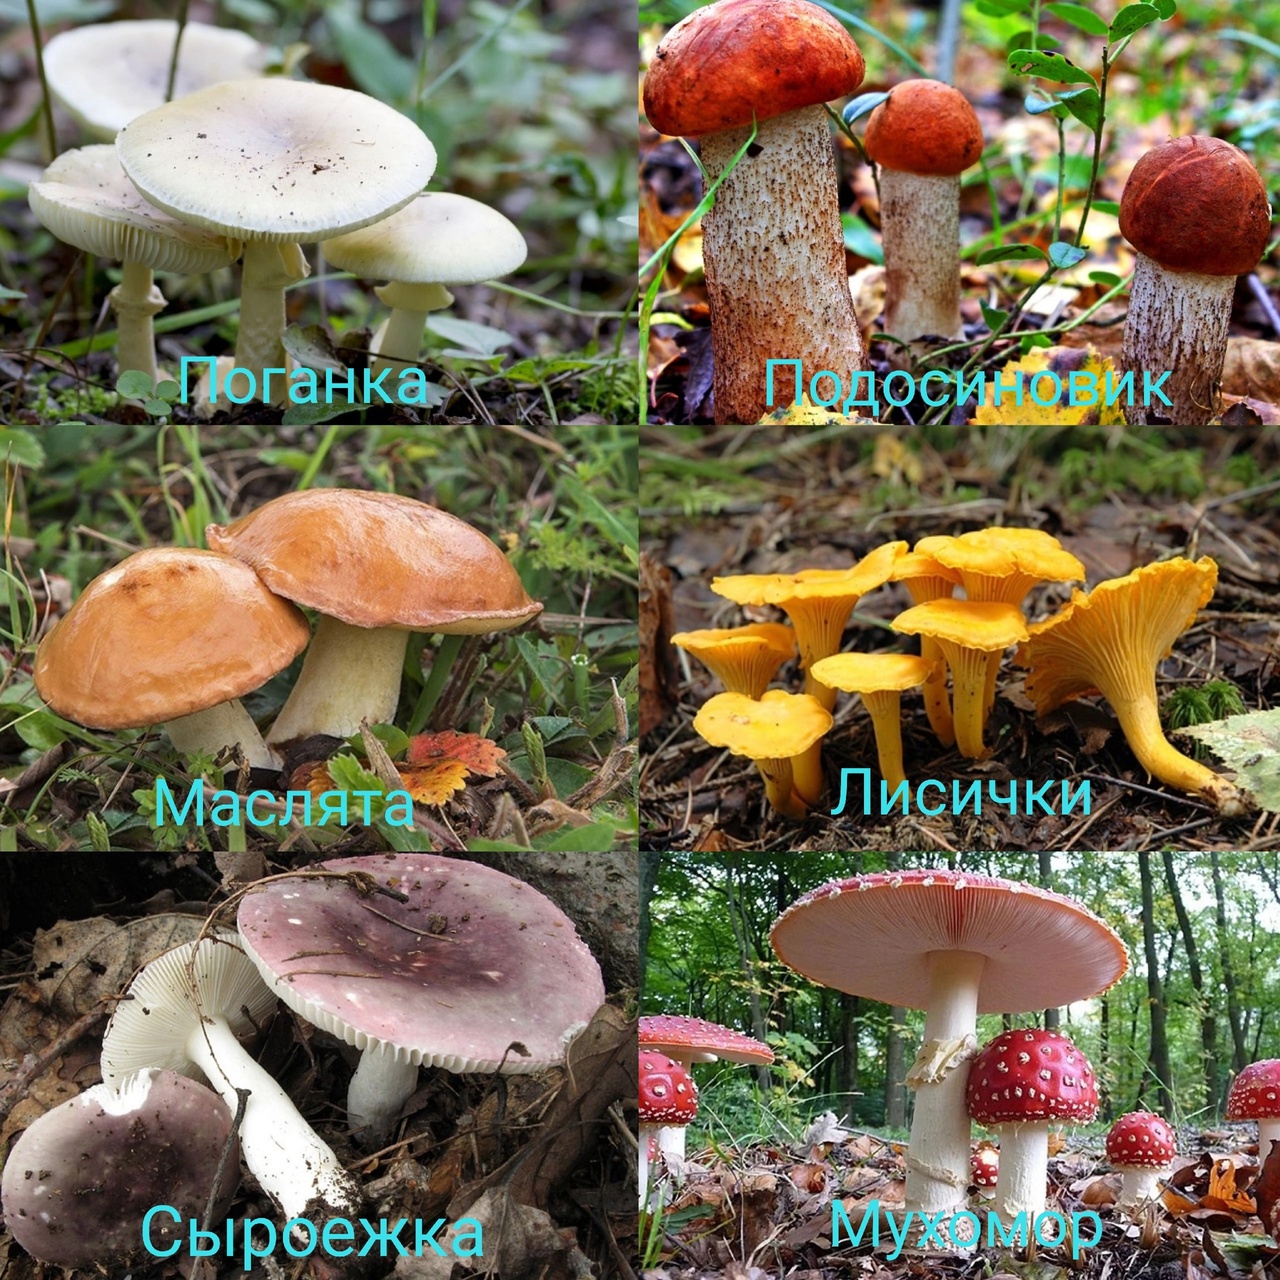 Съедобные и несъедобные грибы. | Удоба - бесплатный конструктор  образовательных ресурсов